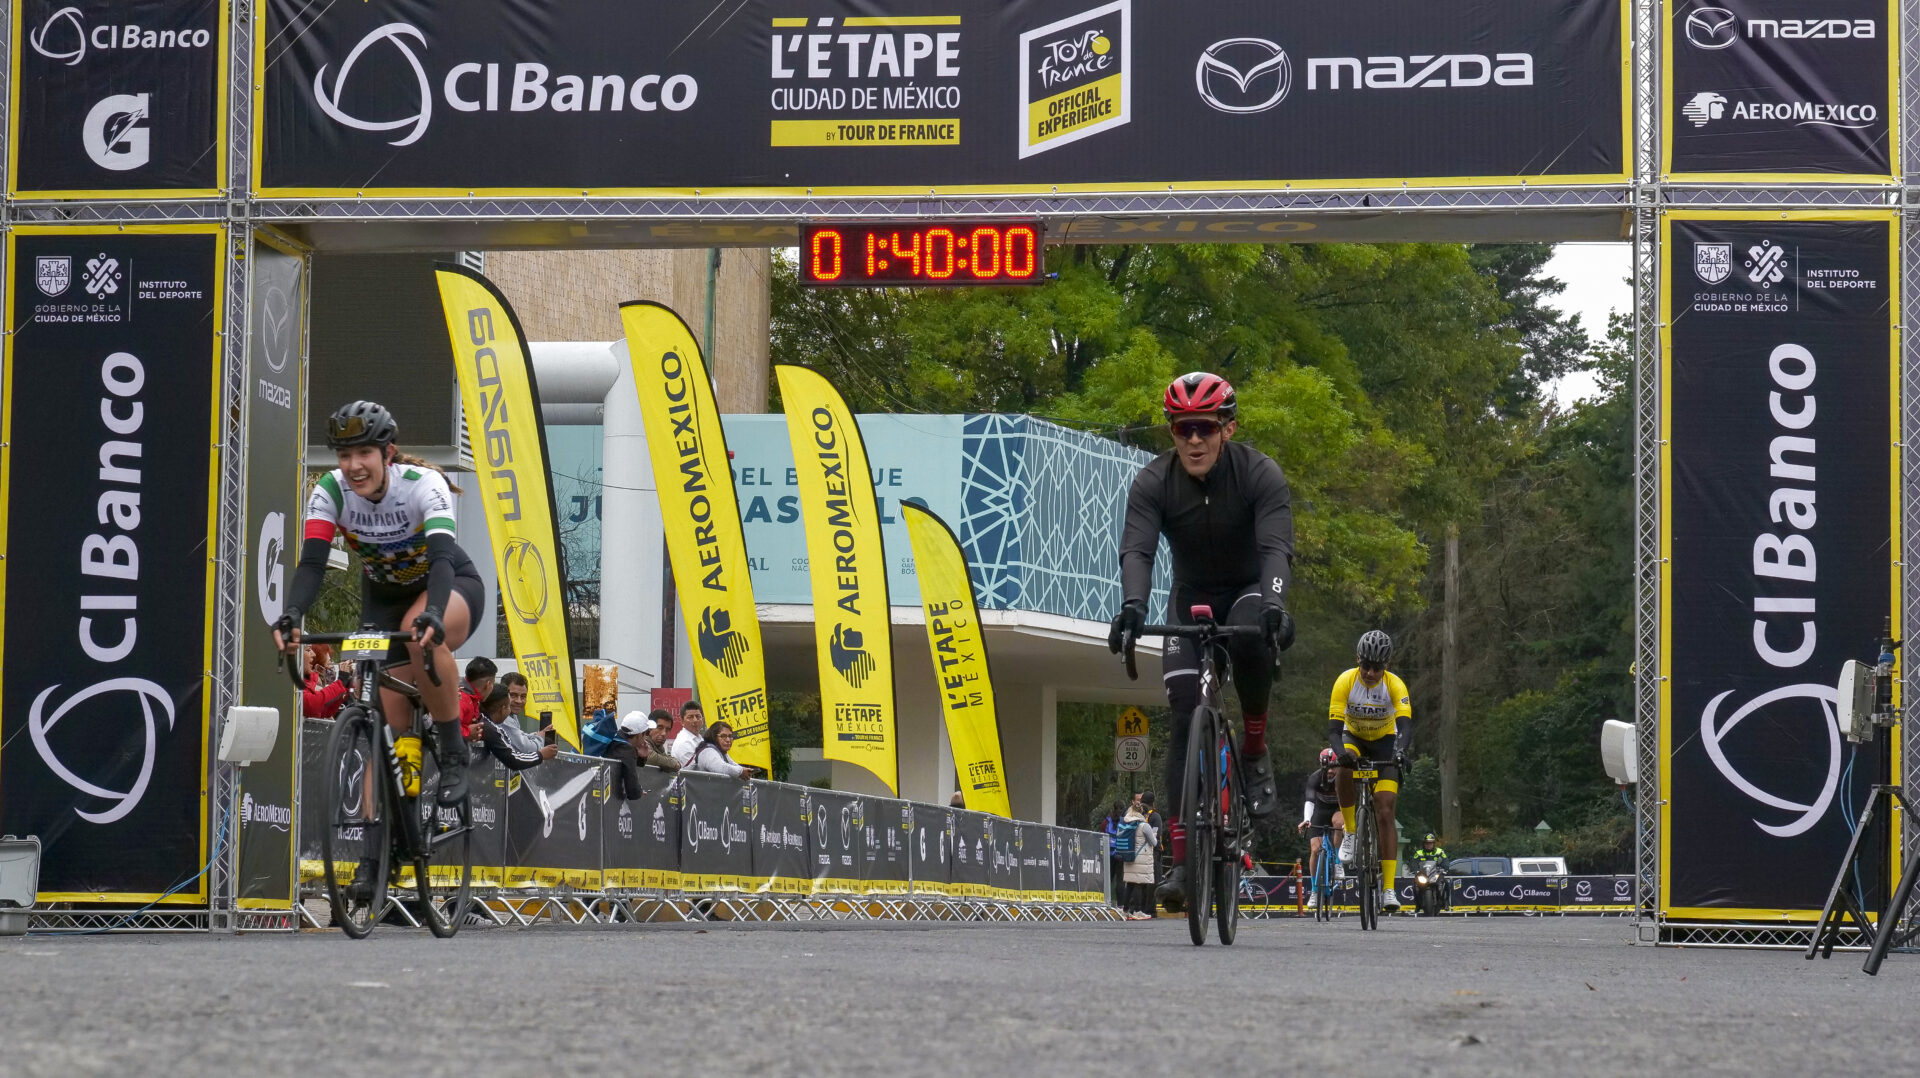 Tour de France L’Etape CDMX: La fiesta ciclista está en México